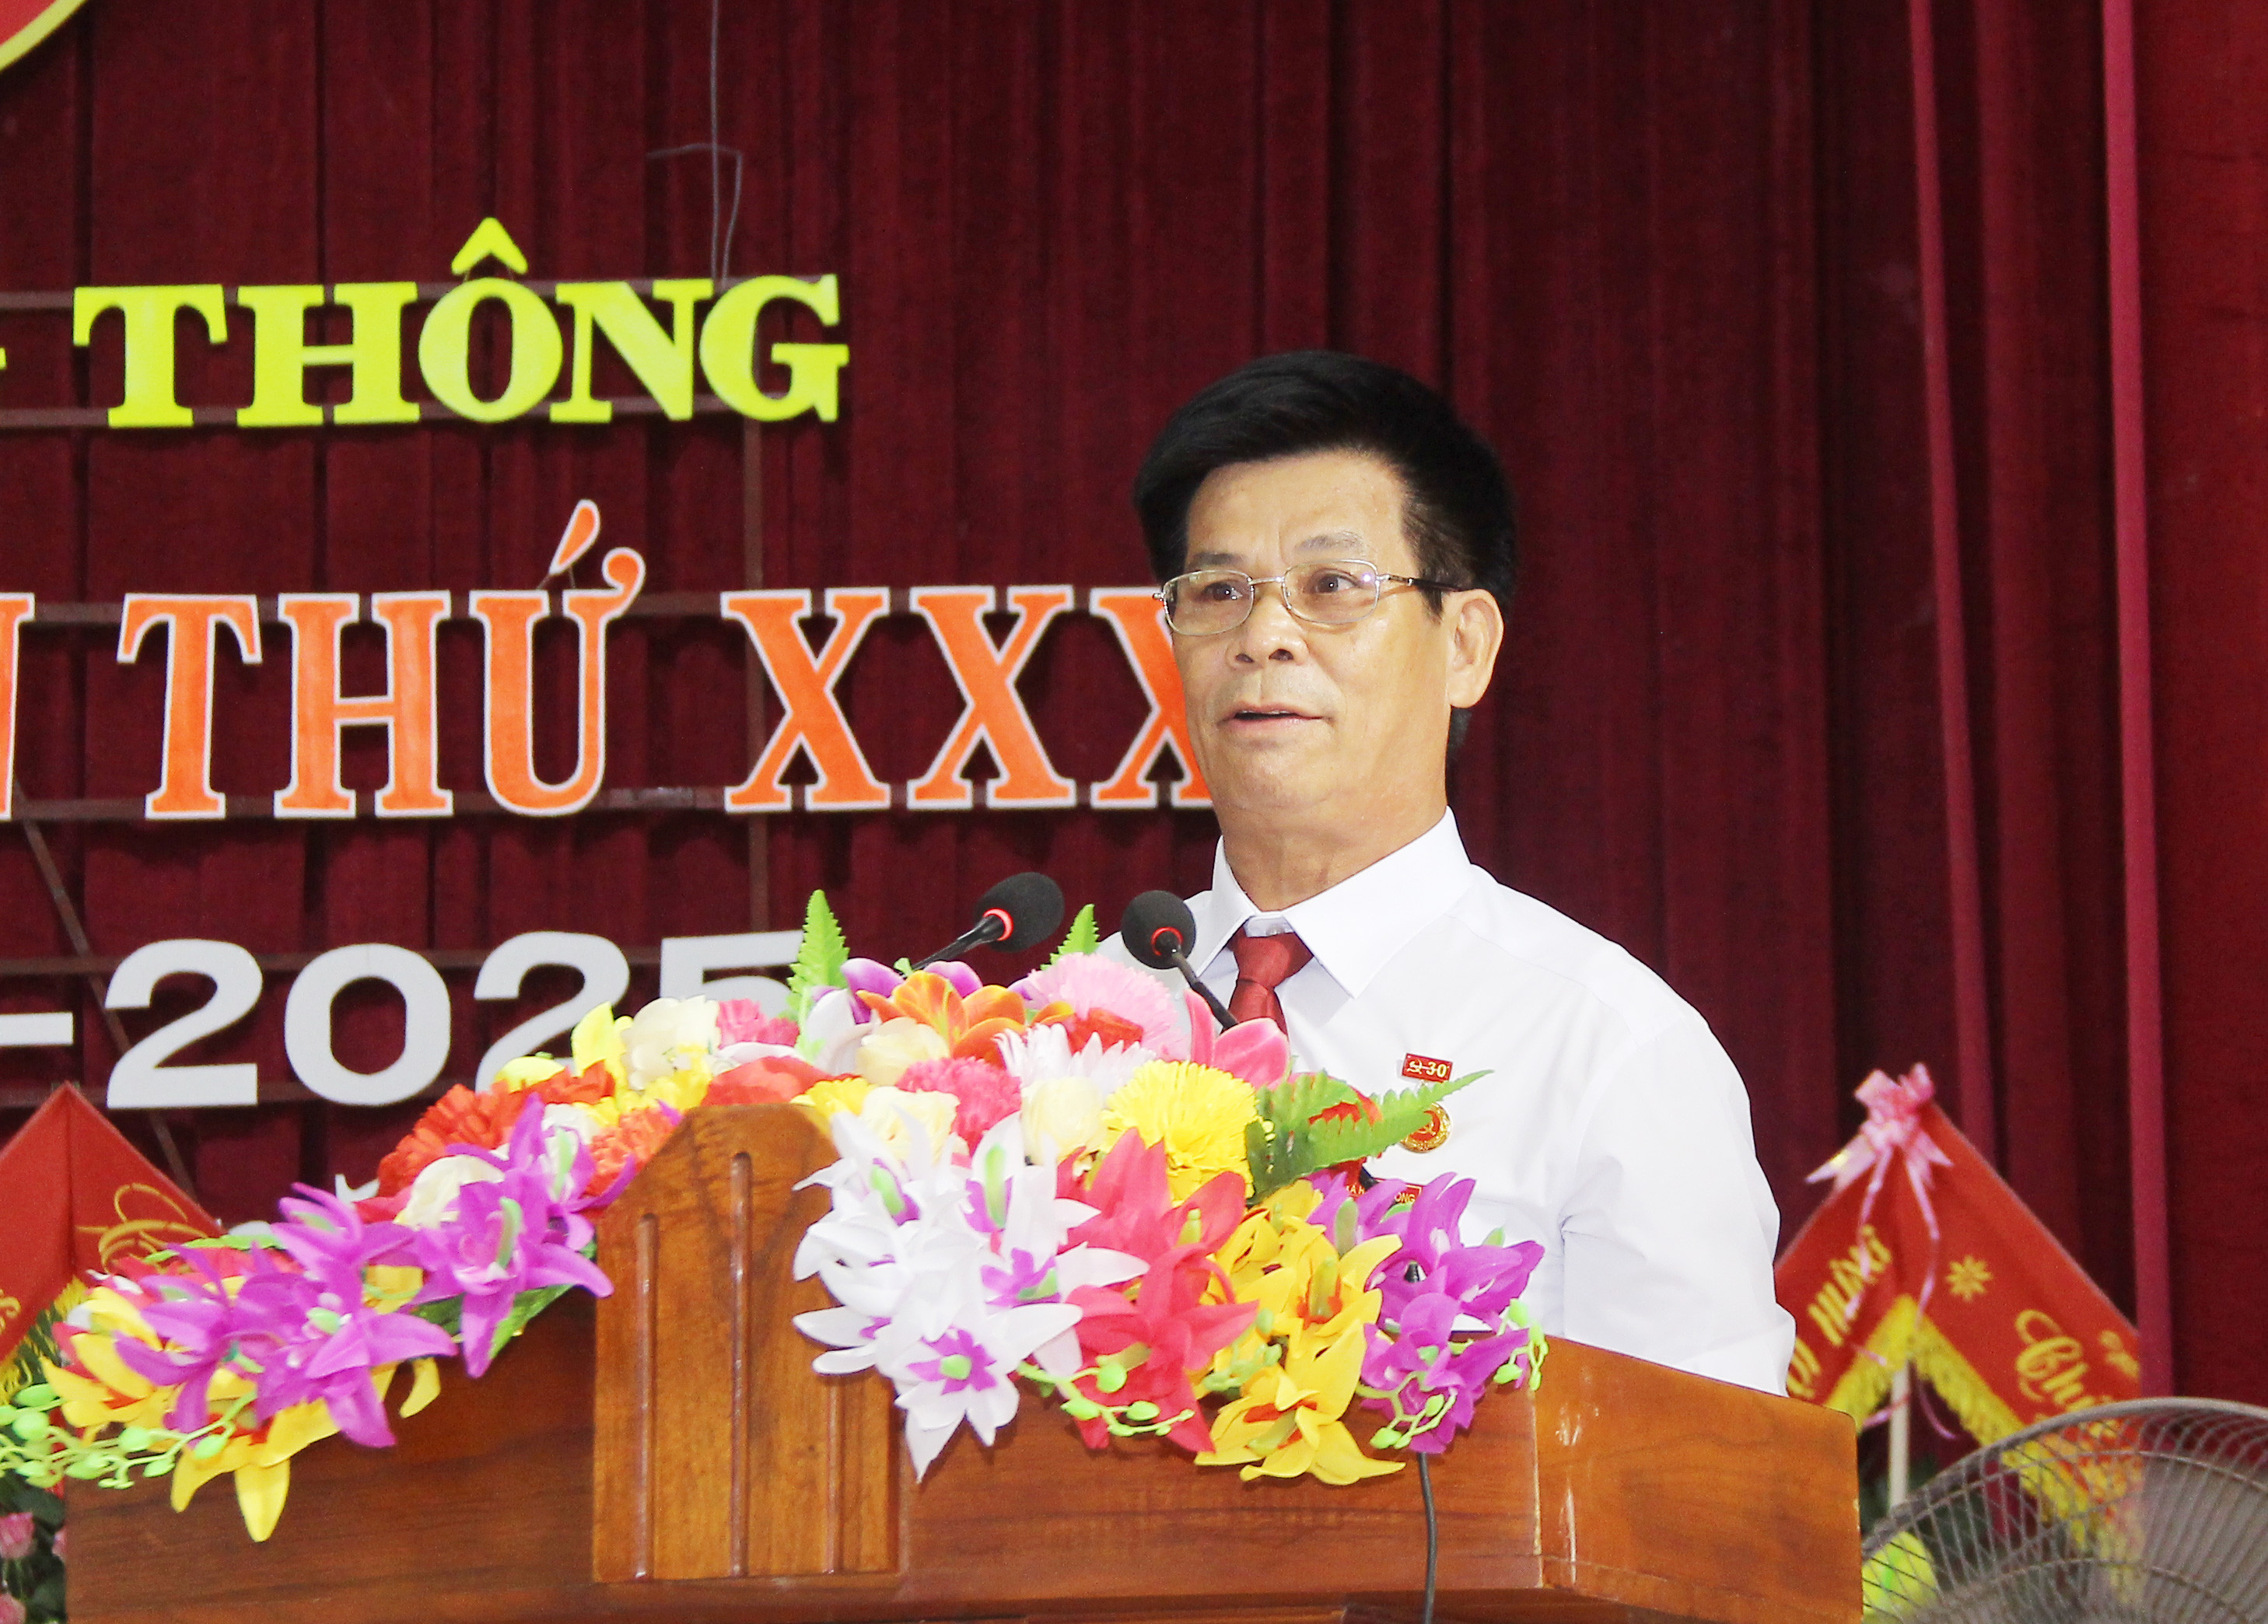 Đồng chí Phạm Viết Nam - Bí thư Đảng ủy xã nhiệm kỳ 2015 - 2020 trình bày báo cáo chính trị tại đại hội. Ảnh: Mai Hoa